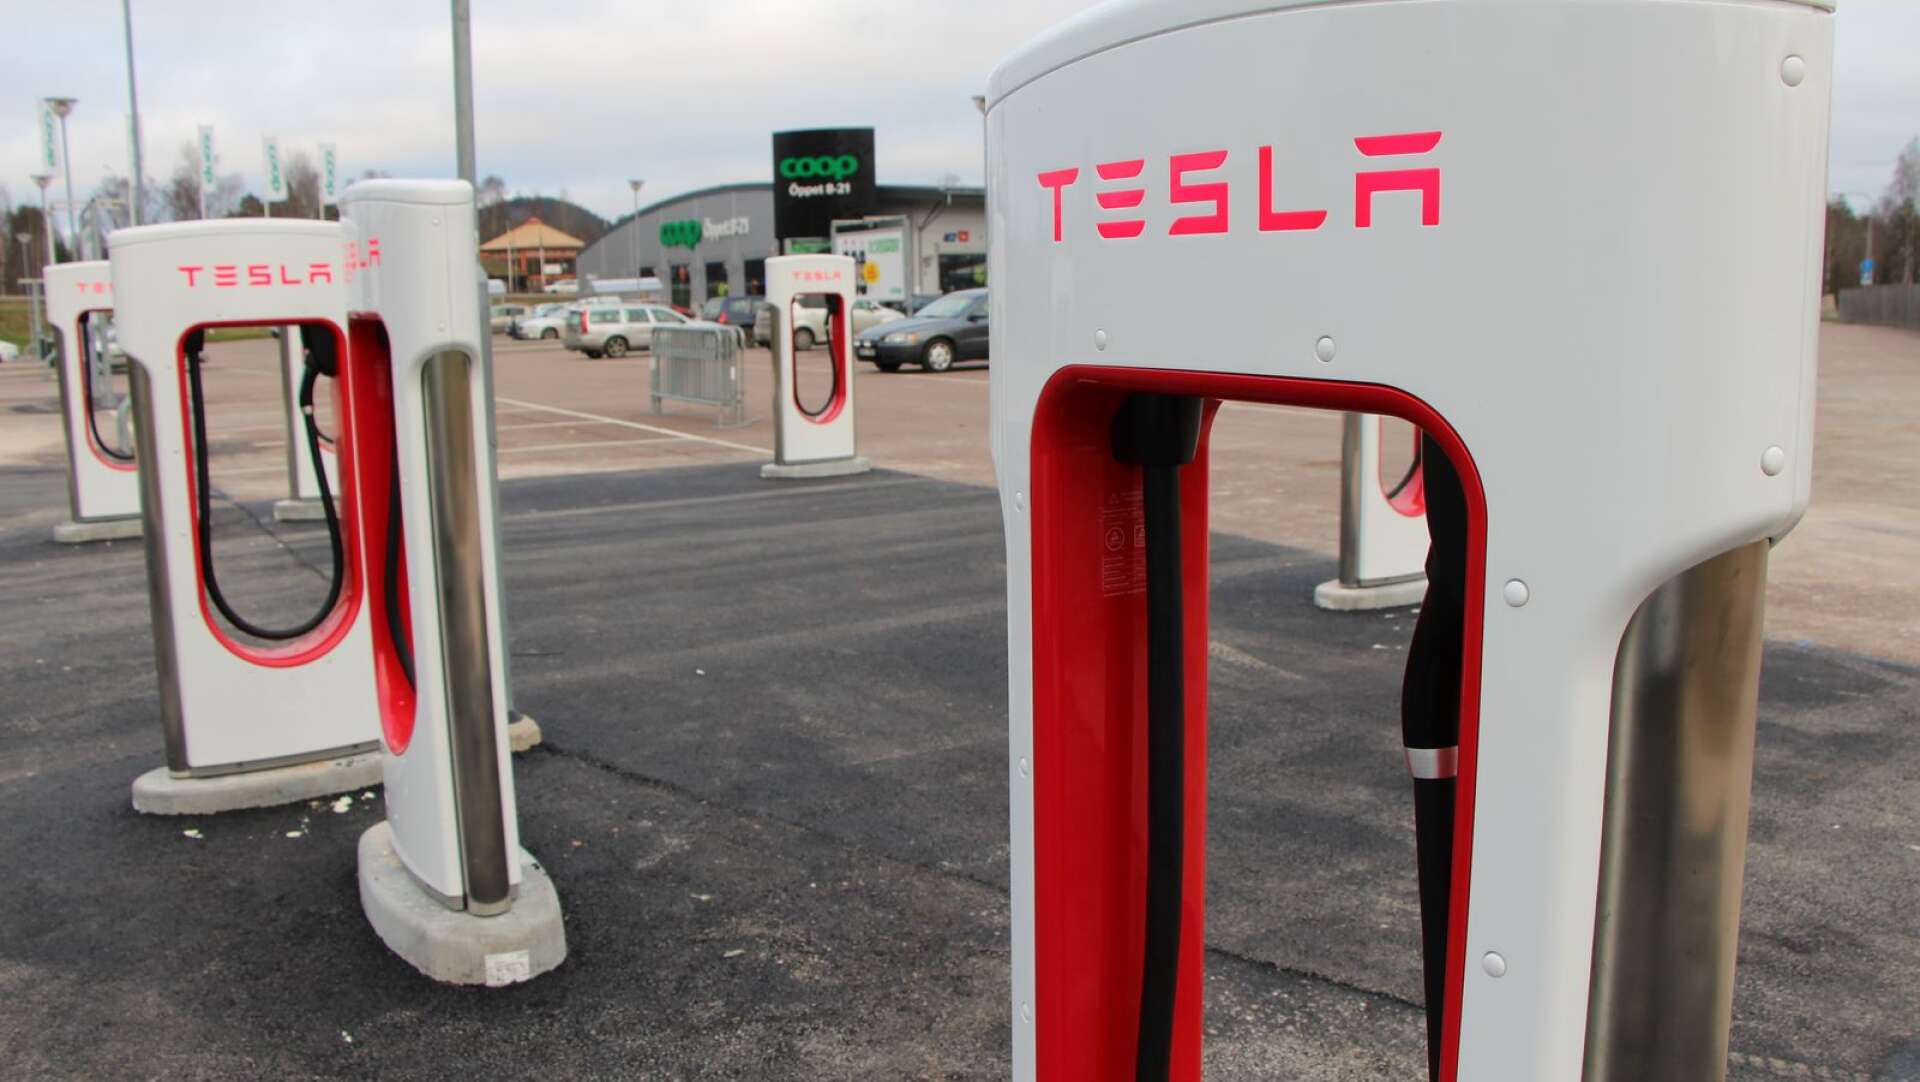 Vid Coop i Torsby har Tesla satt upp åtta supercharger laddstationer som inom kort kommer att tas i bruk.